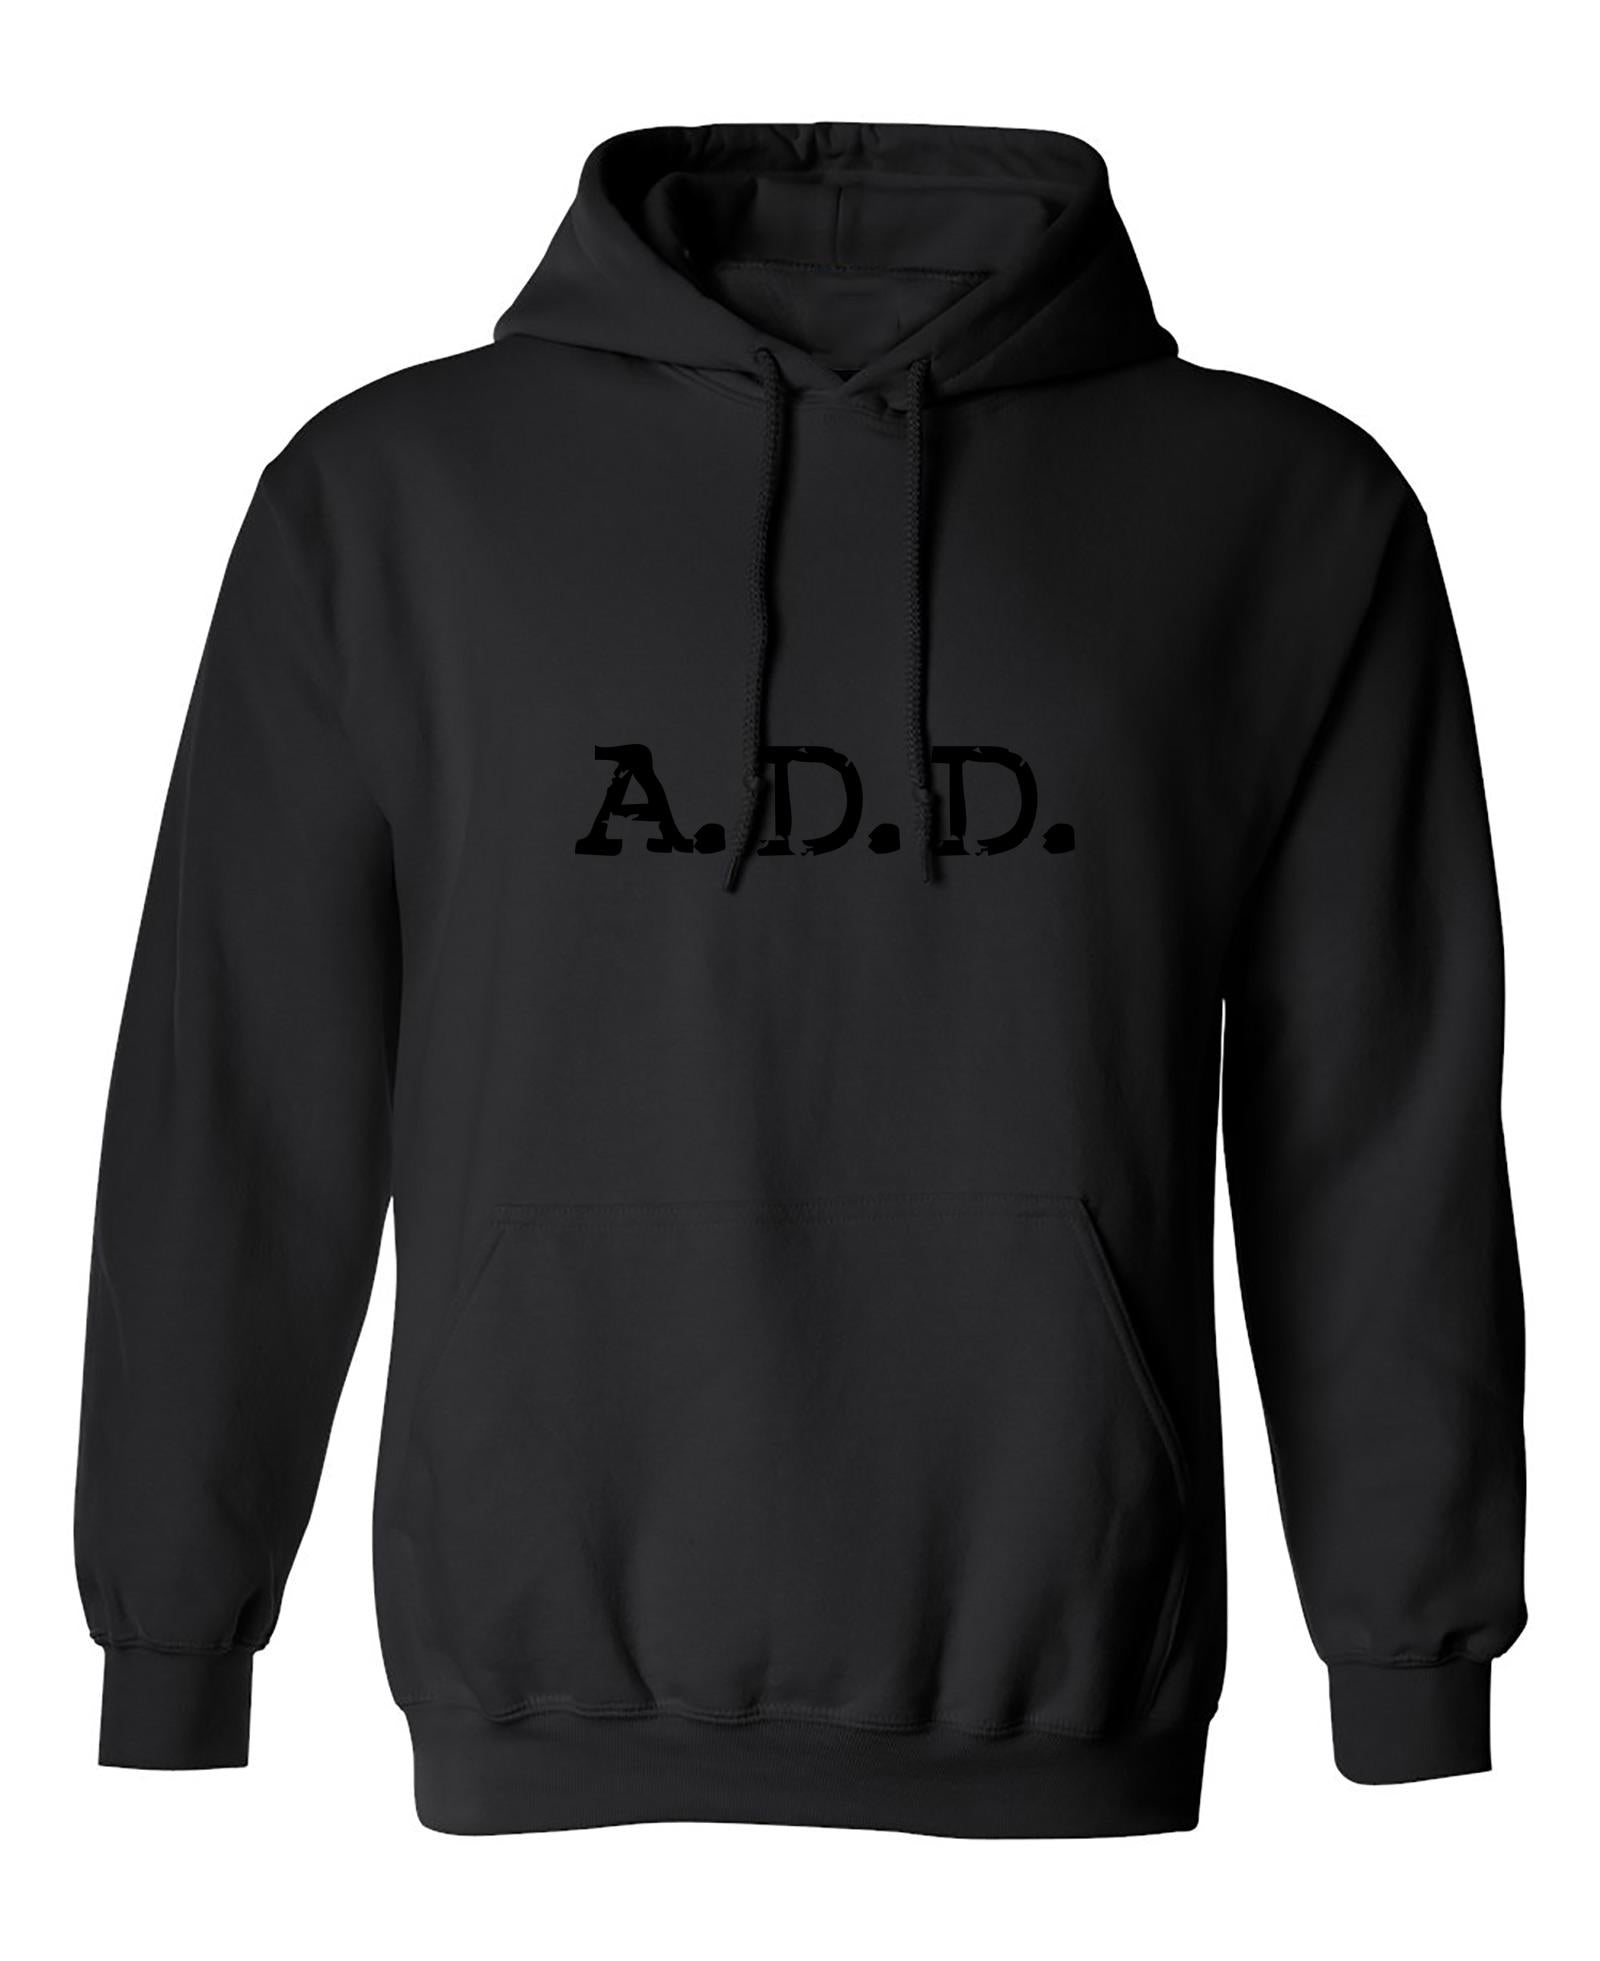 Funny T-Shirts design "A.D.D"